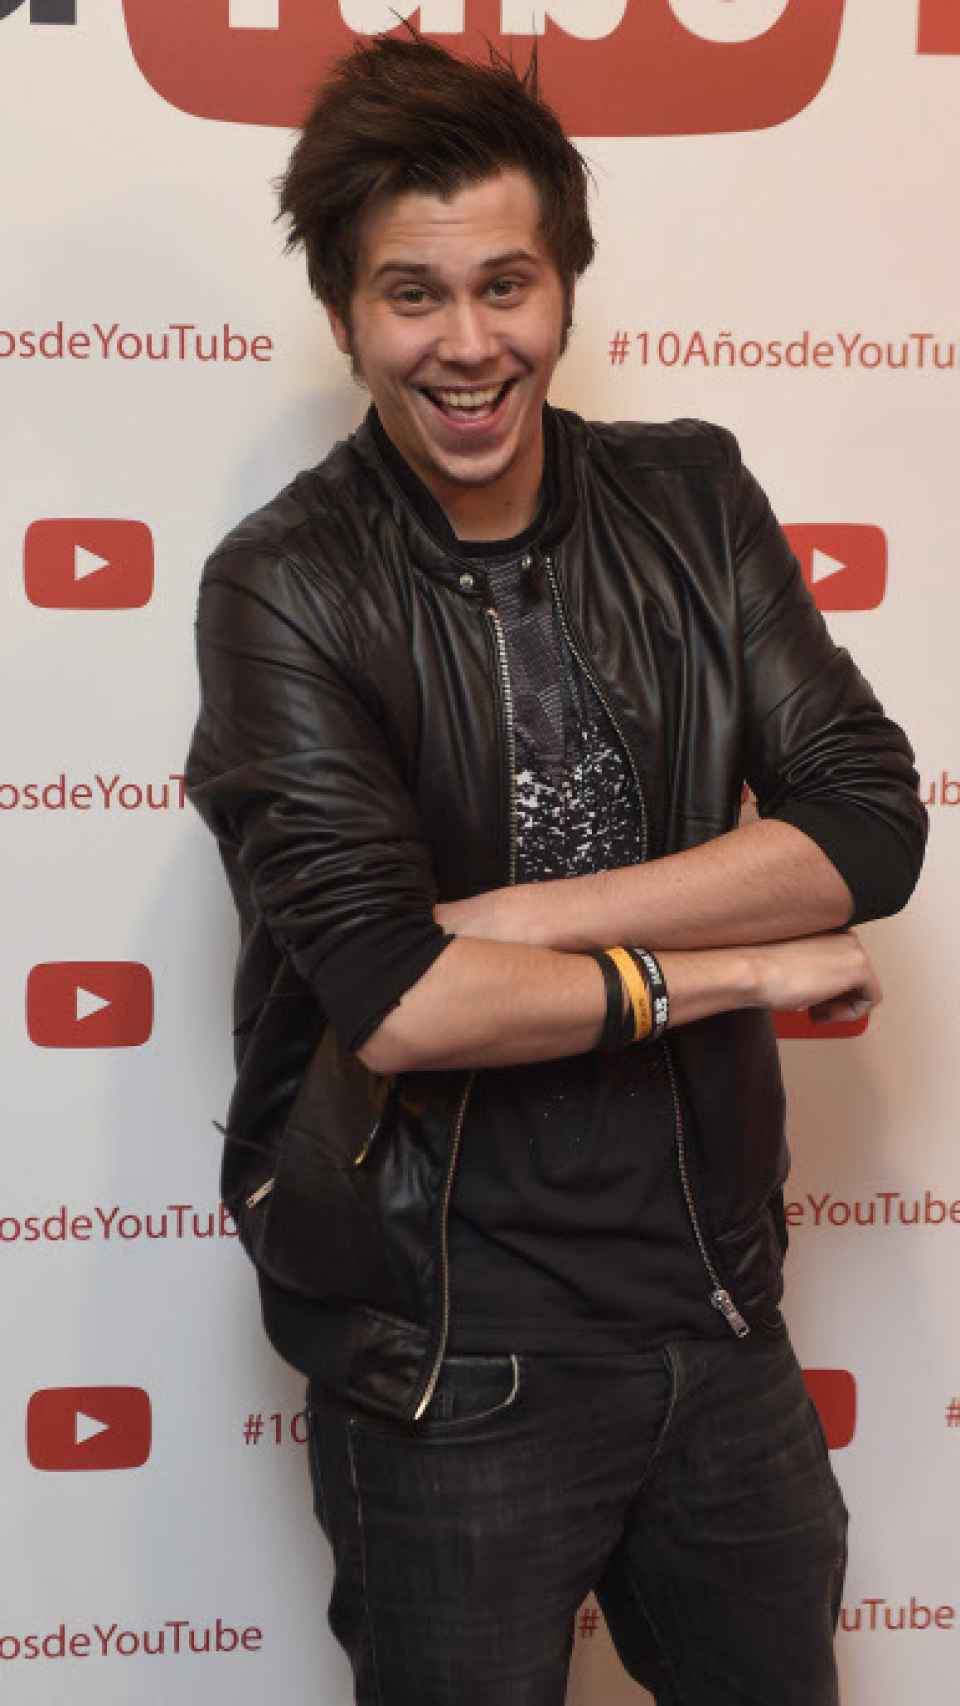 El Rubius, en el aniversario de Youtube en 2015.